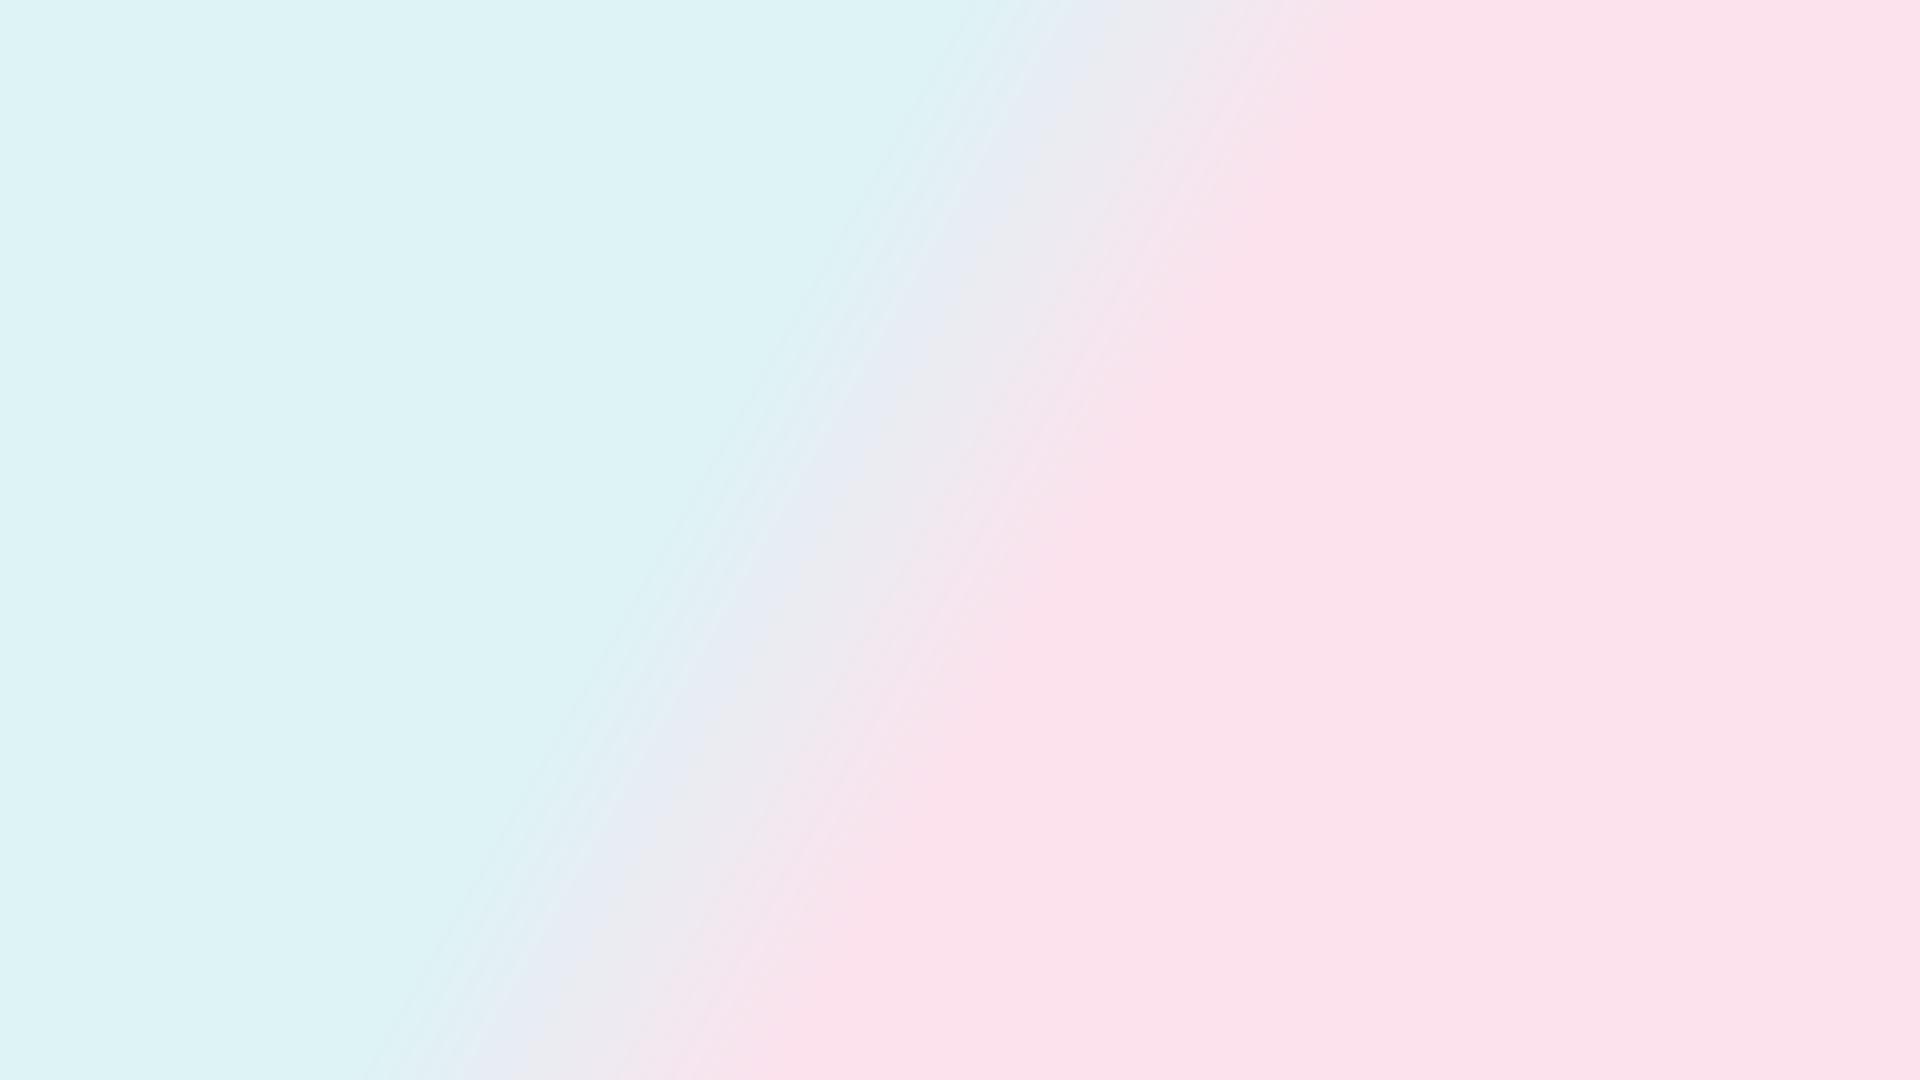 Rose Quartz And Serenity Gradient - HD Wallpaper 